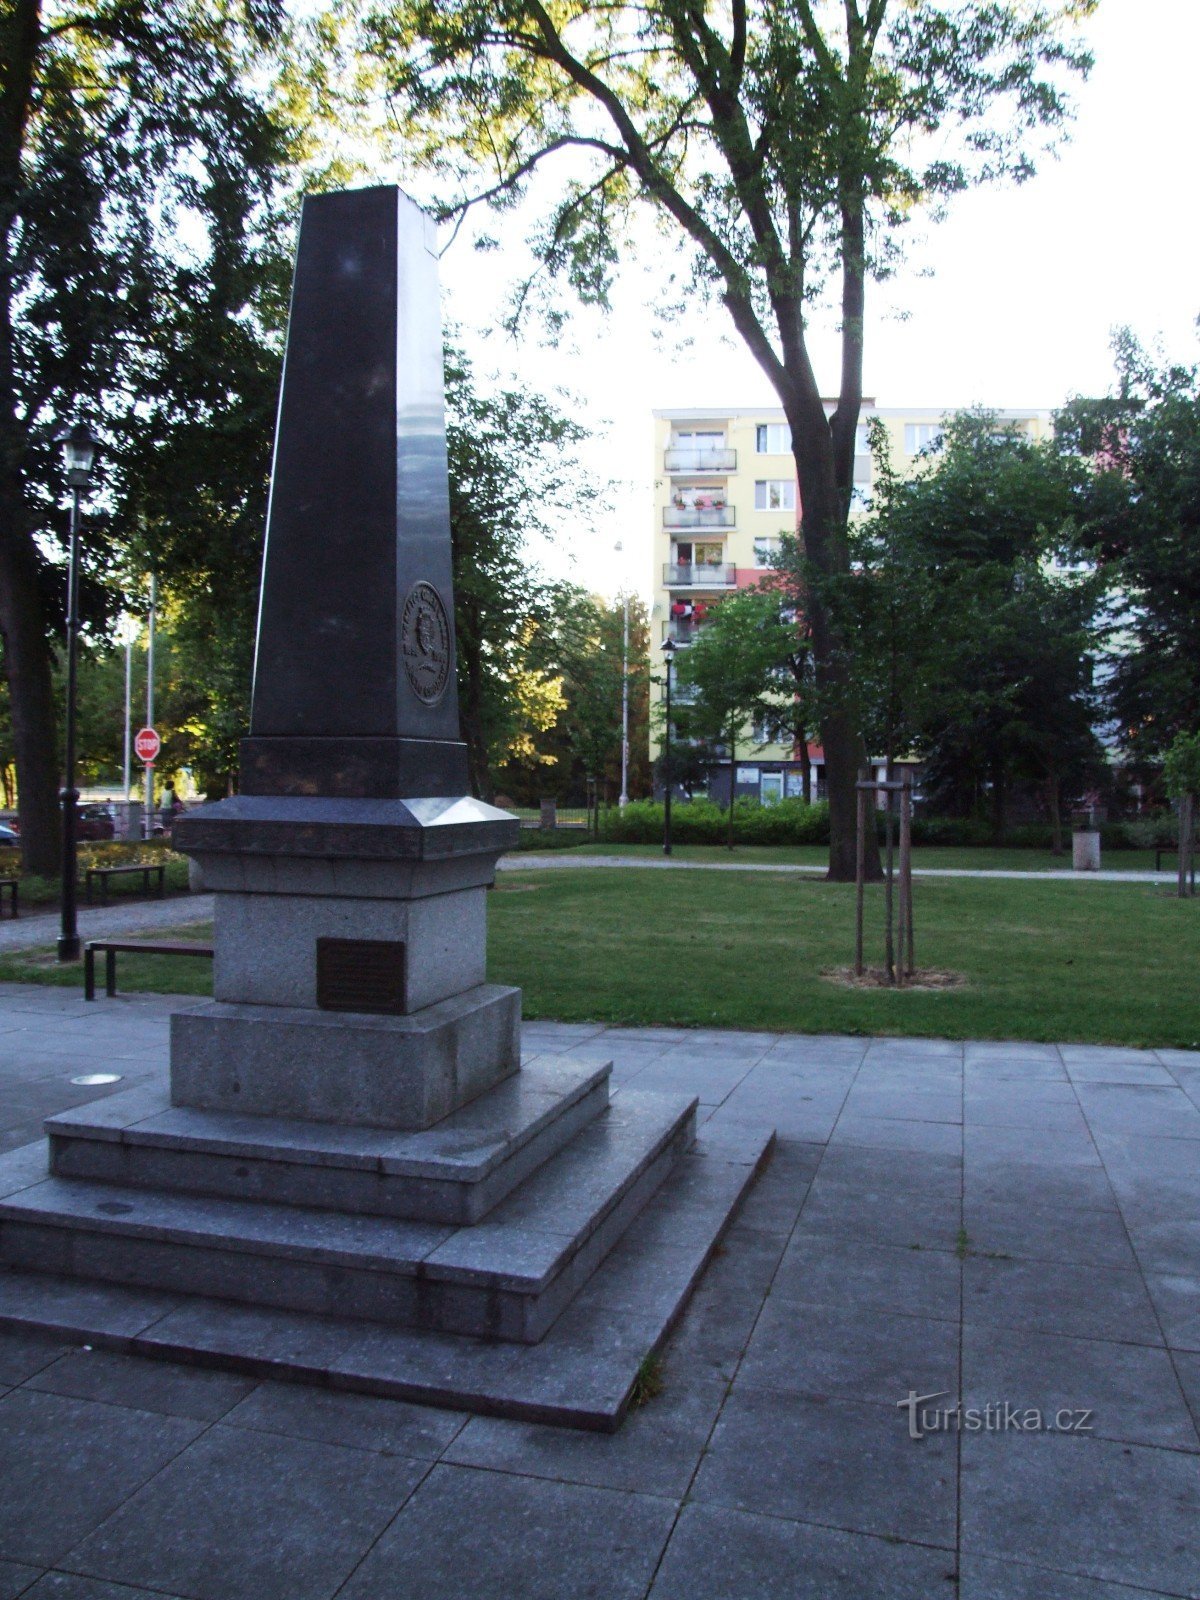 Μνημείο για να τιμηθεί η μνήμη των θυμάτων των πολέμων